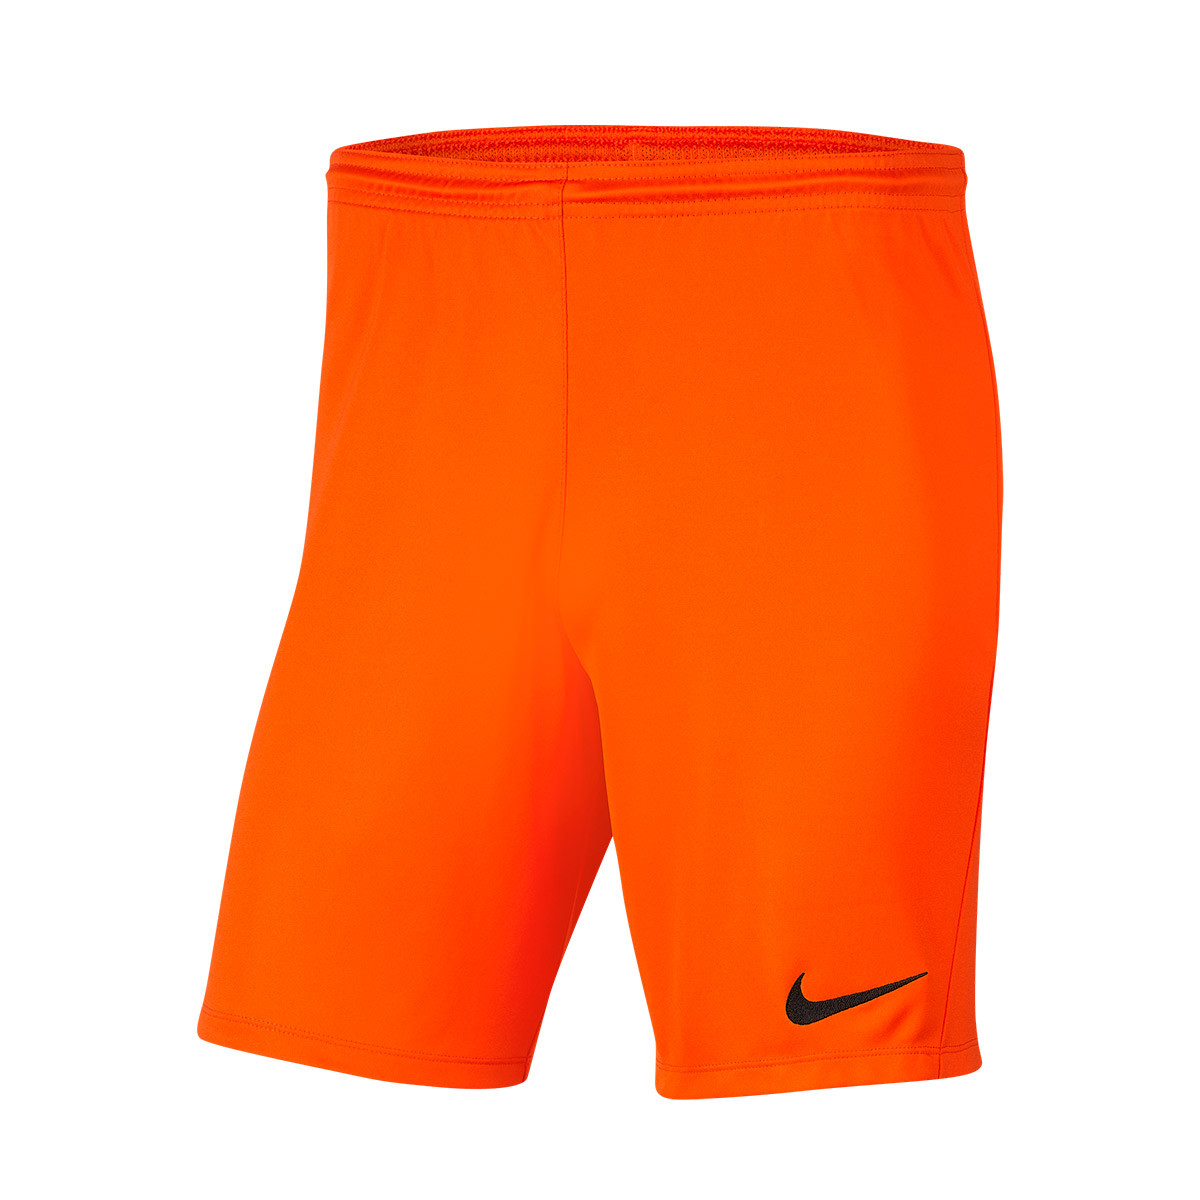 nike shorts orange and black